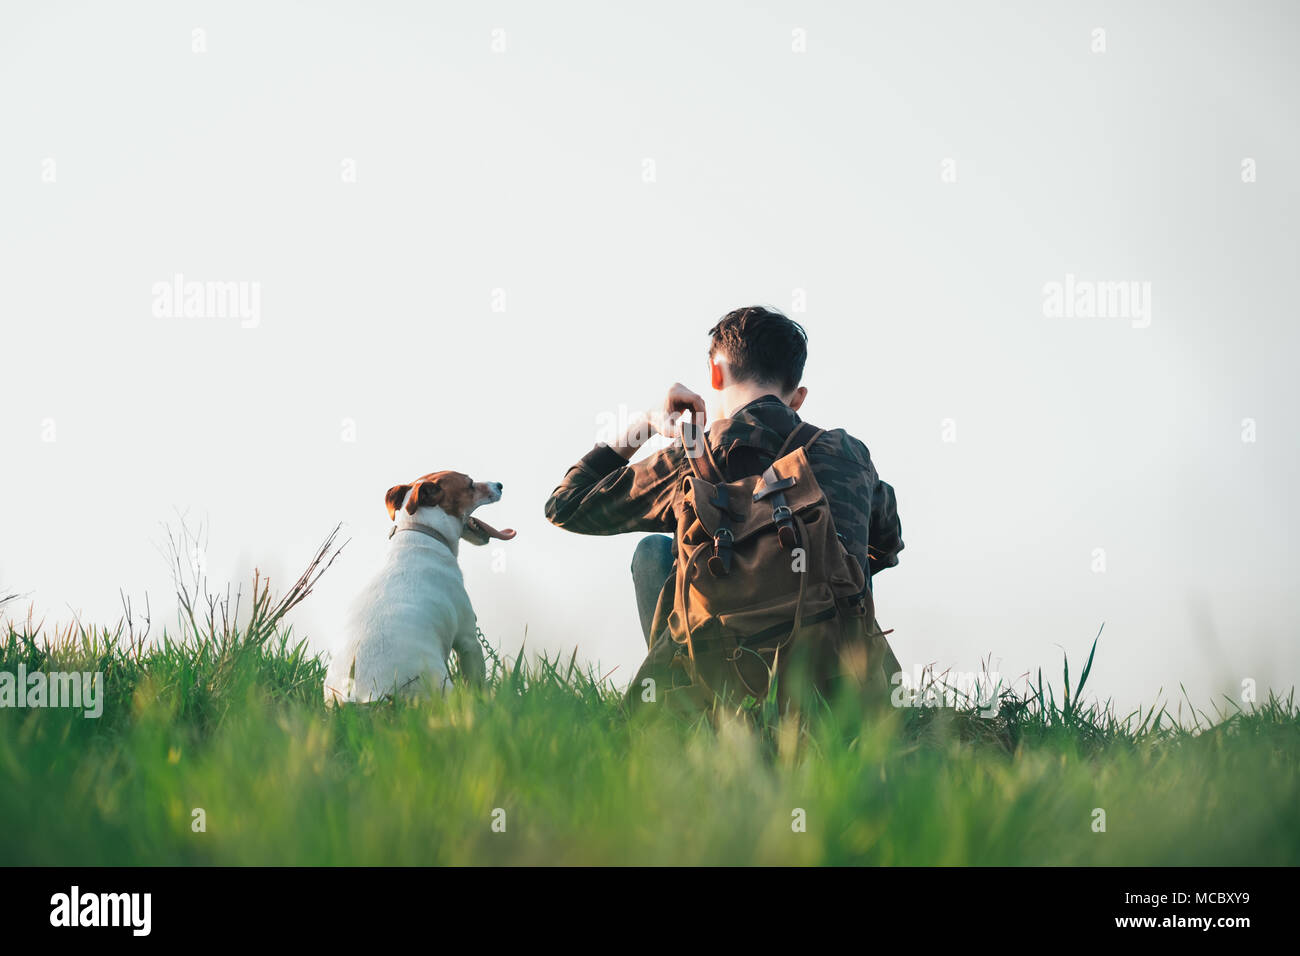 Adolescent sur pelouse verte avec petit chien blanc Banque D'Images